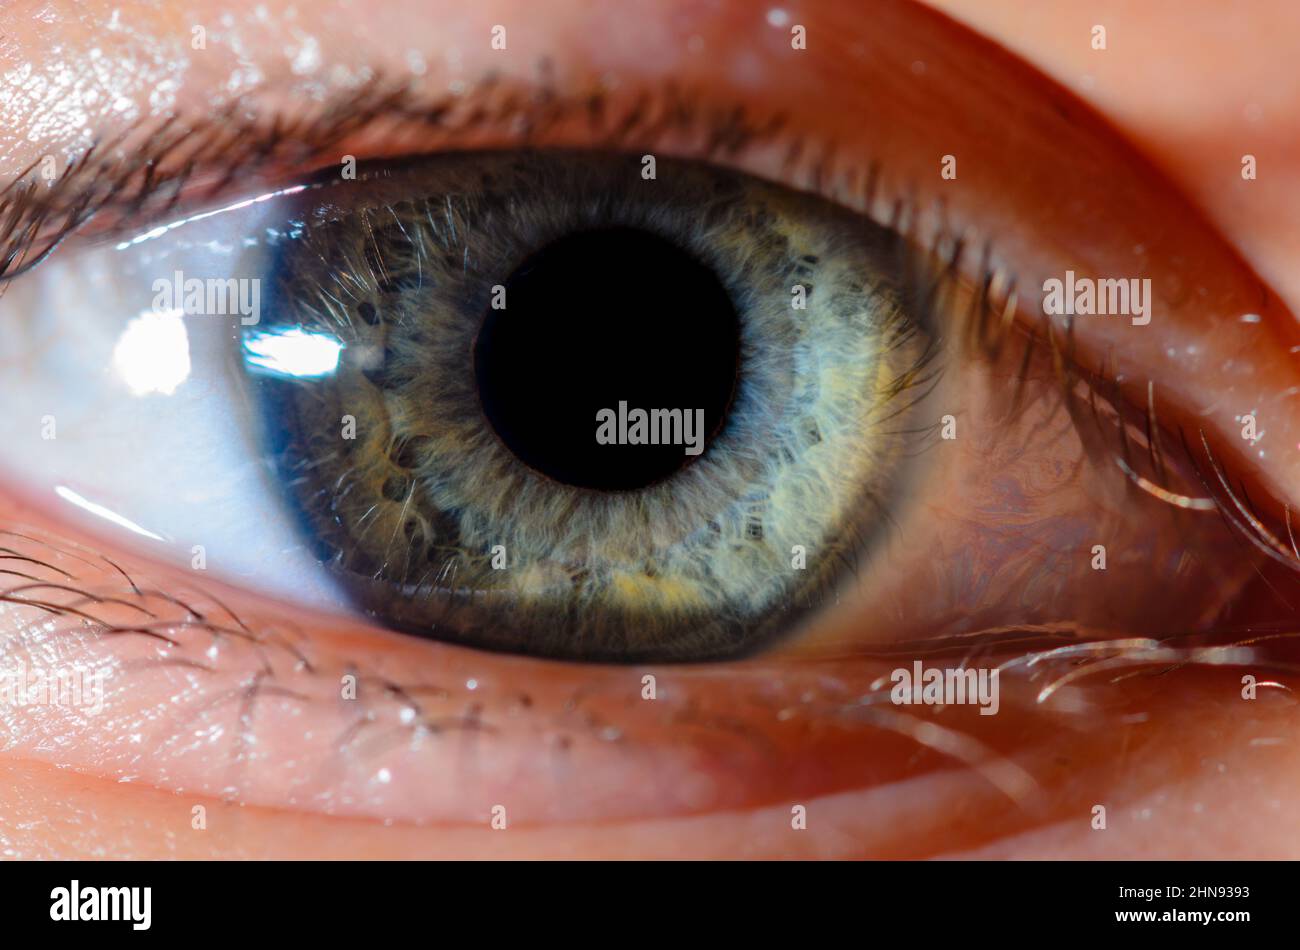 Foto macro molto ravvicinata dell'occhio blu umano. Dettaglio dell'occhio umano in primo piano con profondità di campo ridotta. Foto Stock